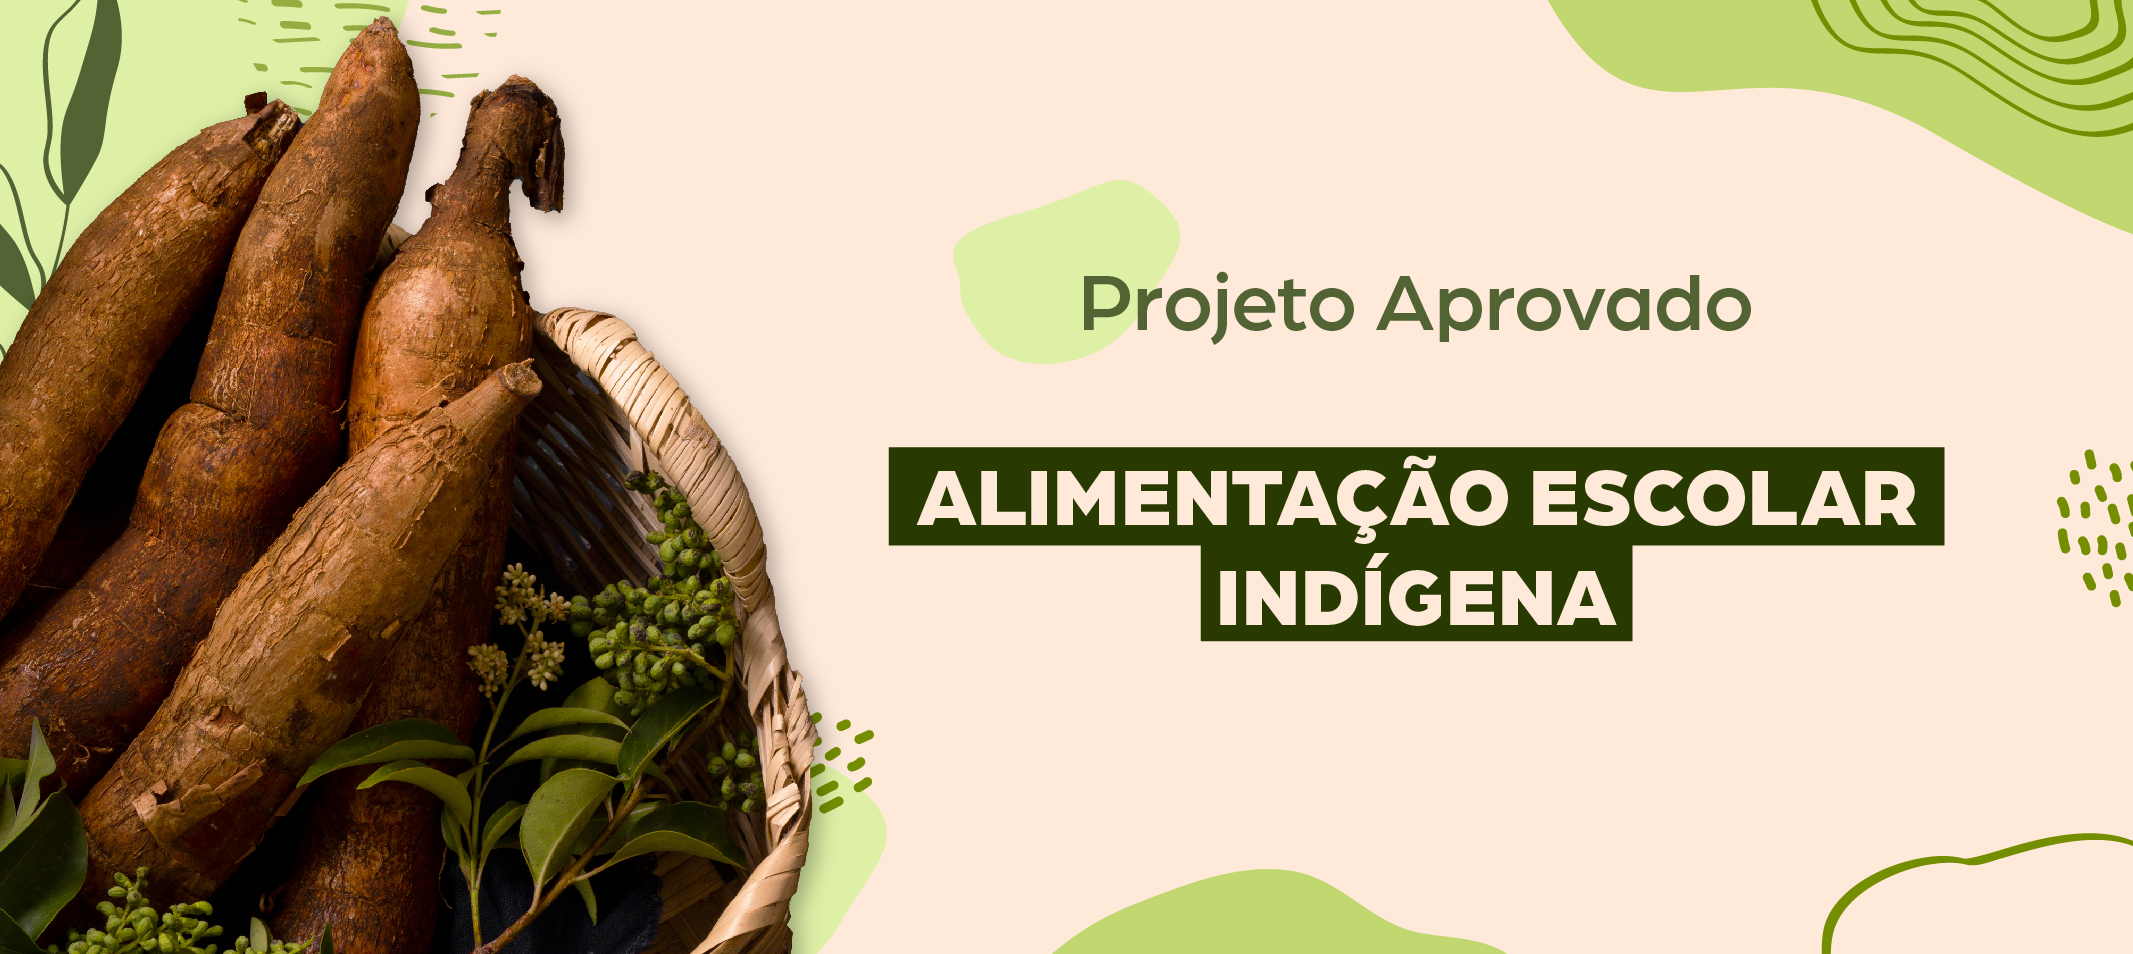 Ufam tem projeto aprovado sobre compras de alimentos da agricultura familiar para alimentação escolar indígena em Edital do Banco da Amazônia